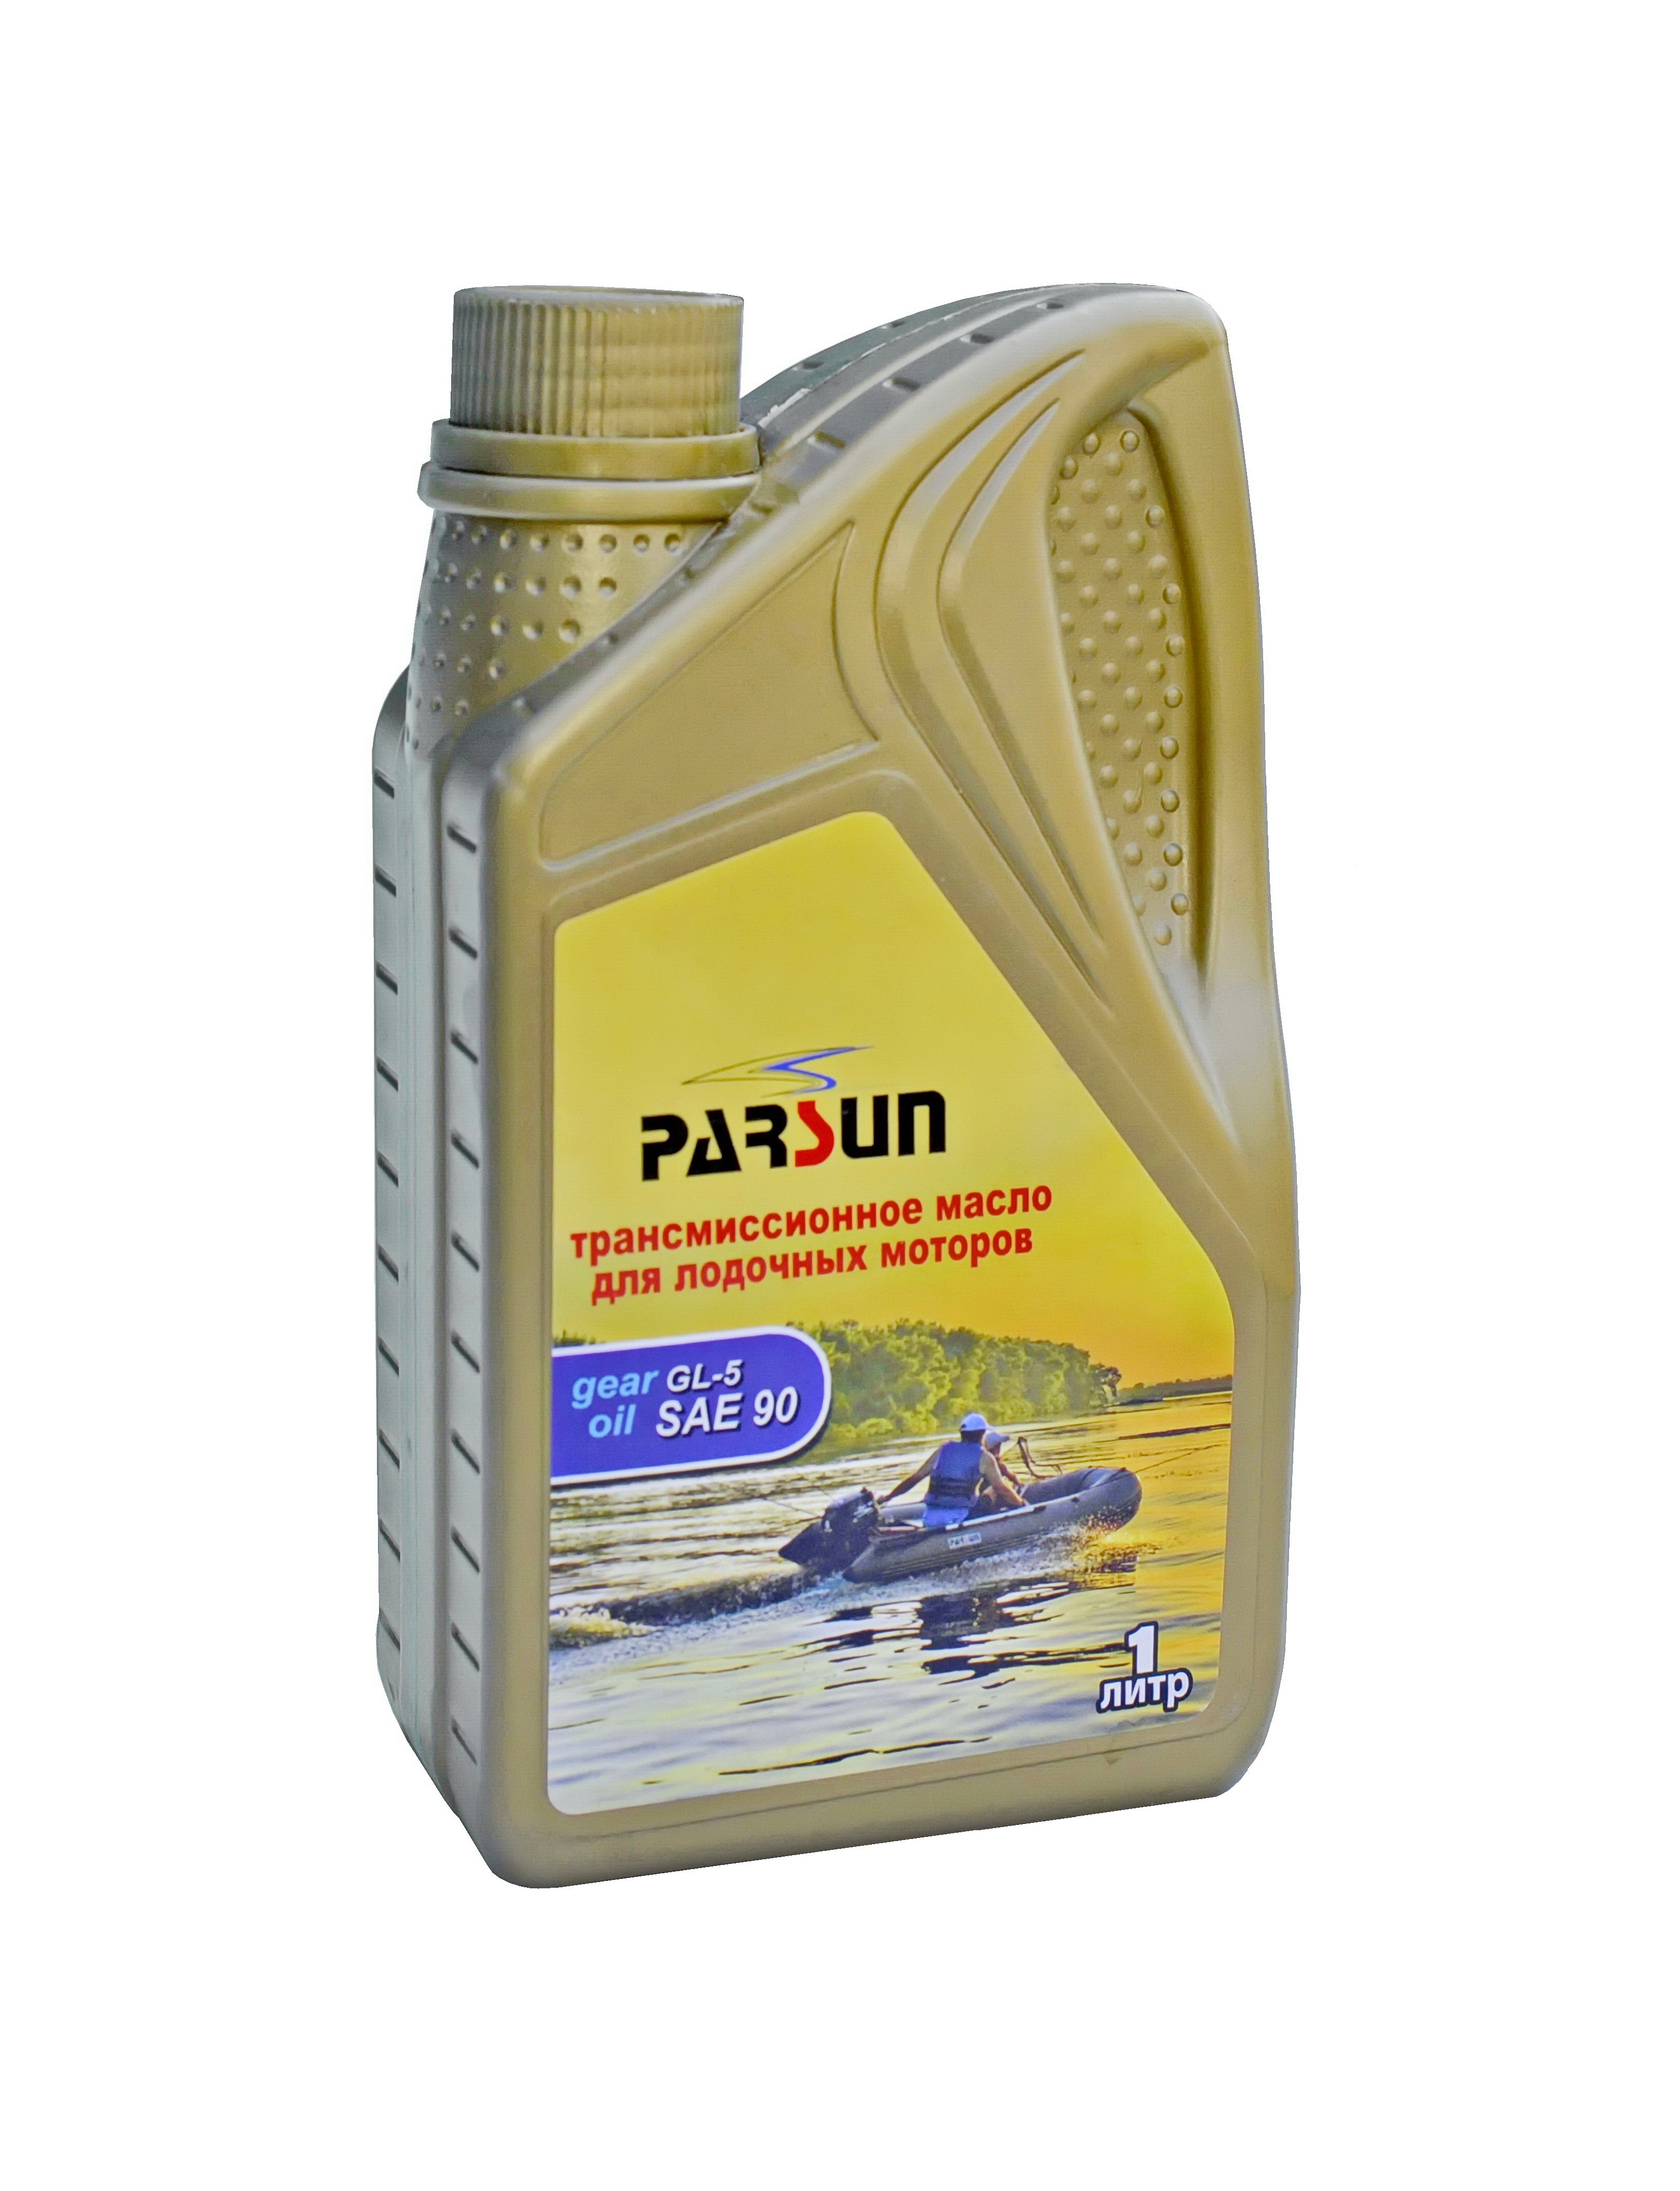 трансмиссионное масло для ПЛМ, трансмиссионное масло для лодочного мотора, масло для редуктора, редукторное масло, масло для редуктора parsun